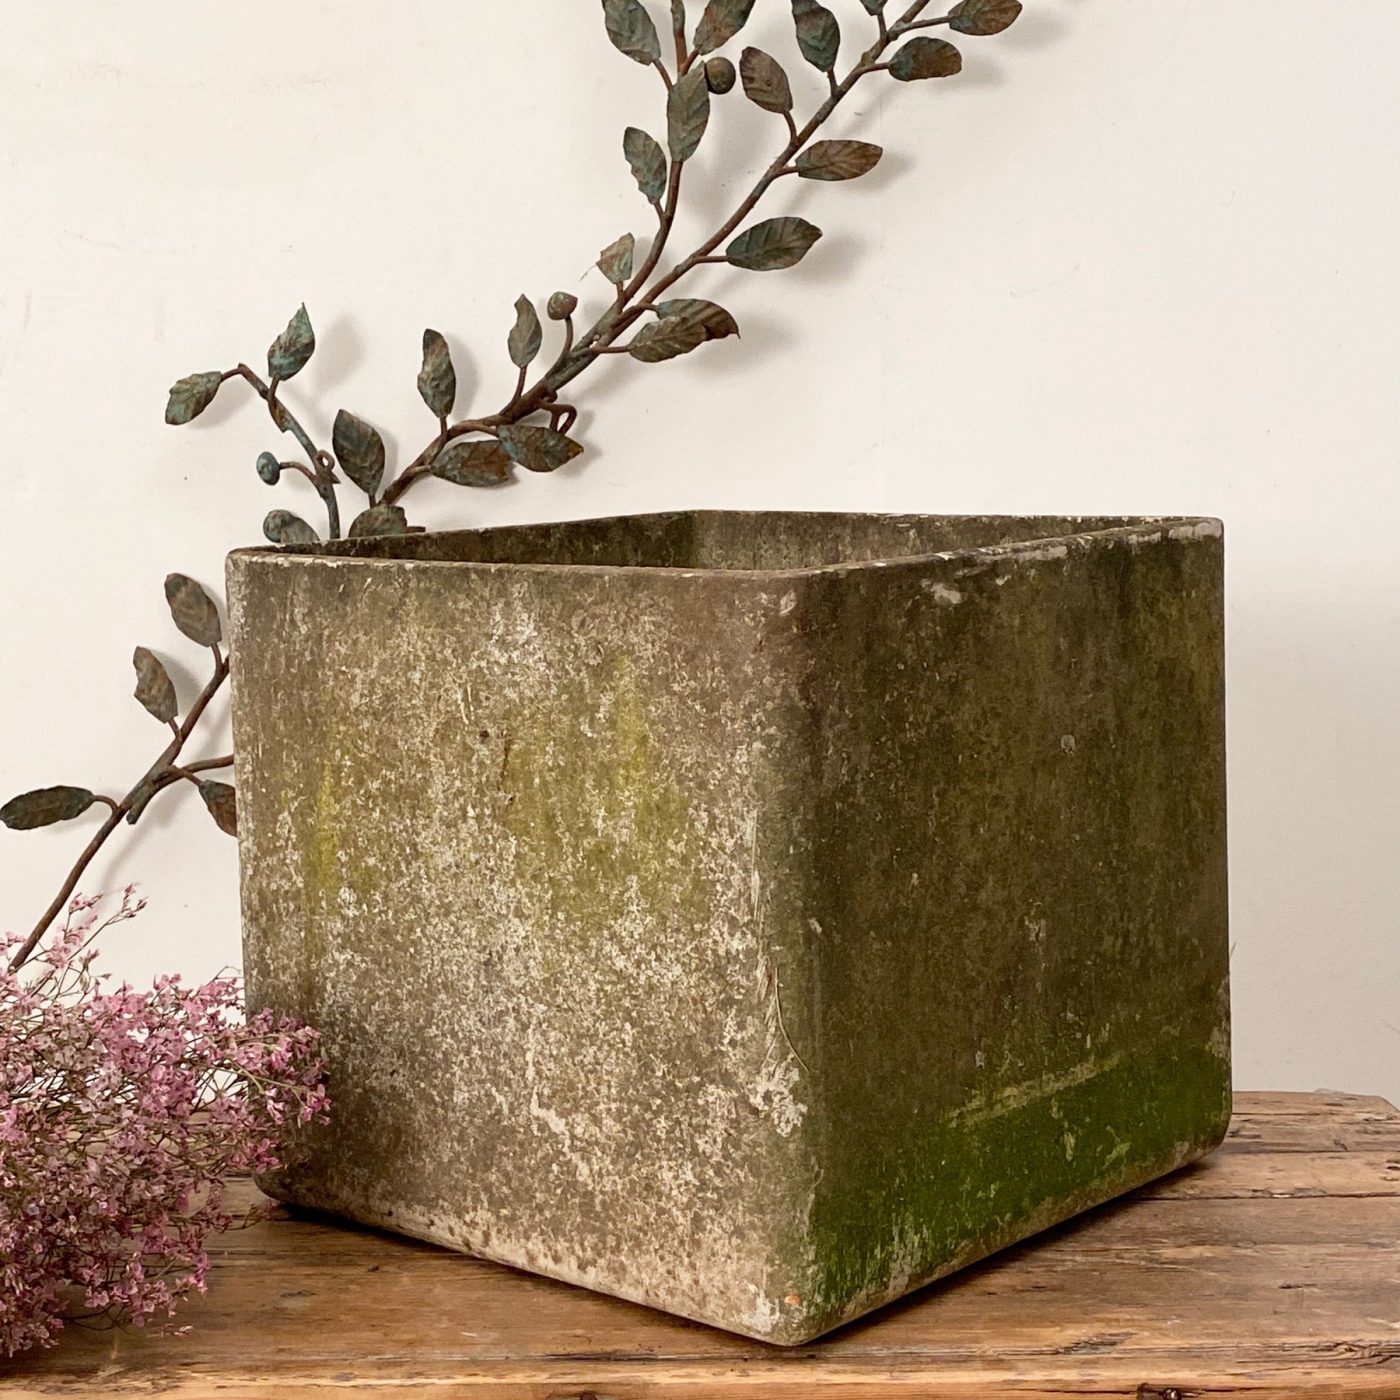 objet-vagabond-concrete-planter0001